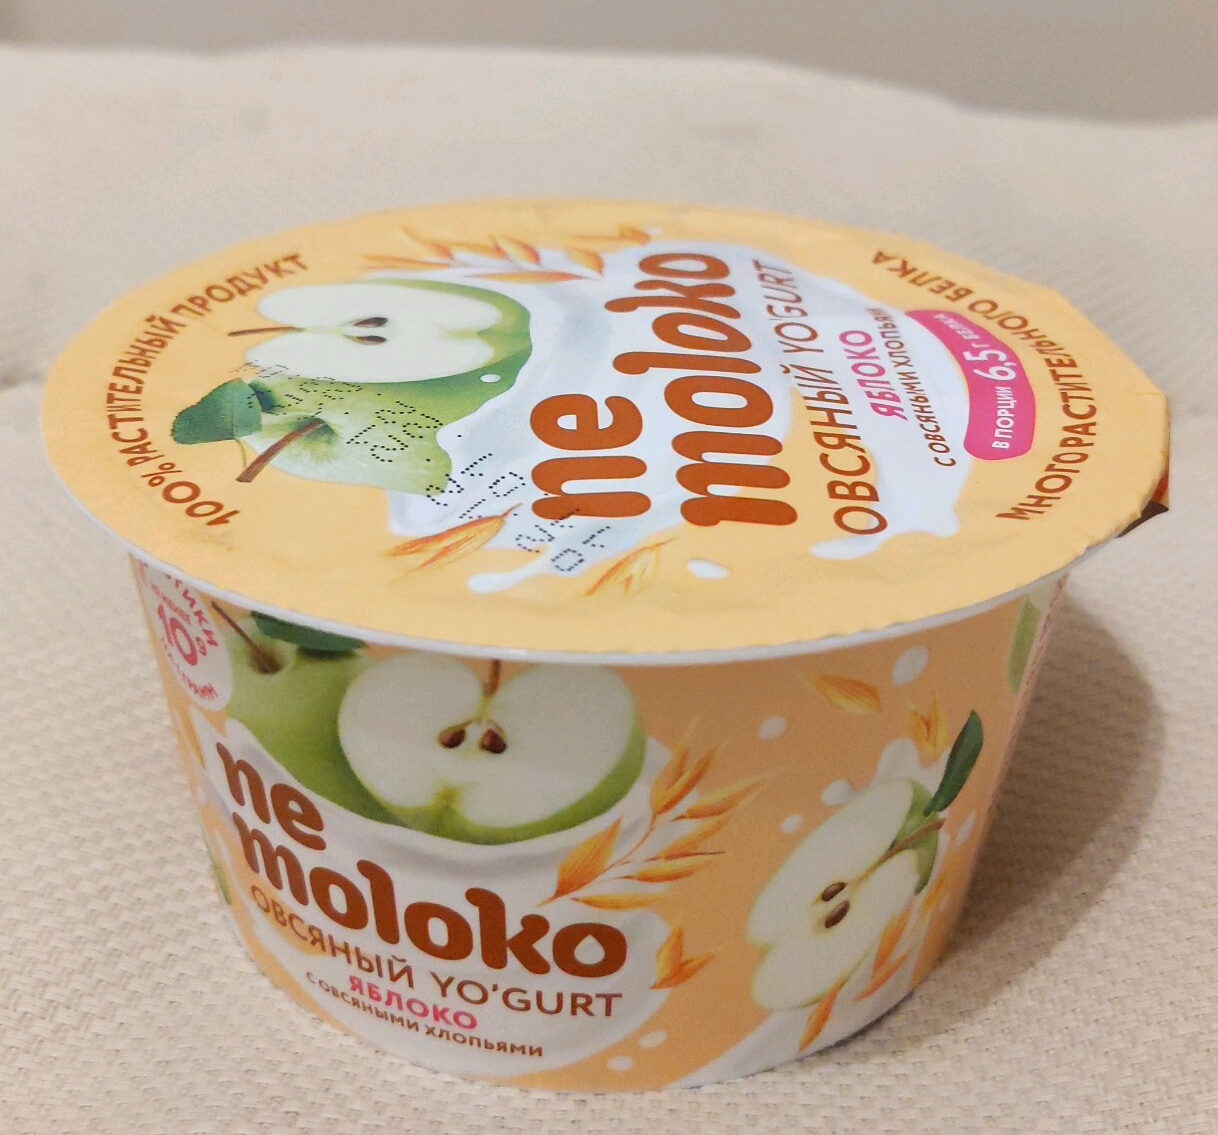 Овсяный йогурт с яблоком и овсяными хлопьями Nemoloko - Product - ru